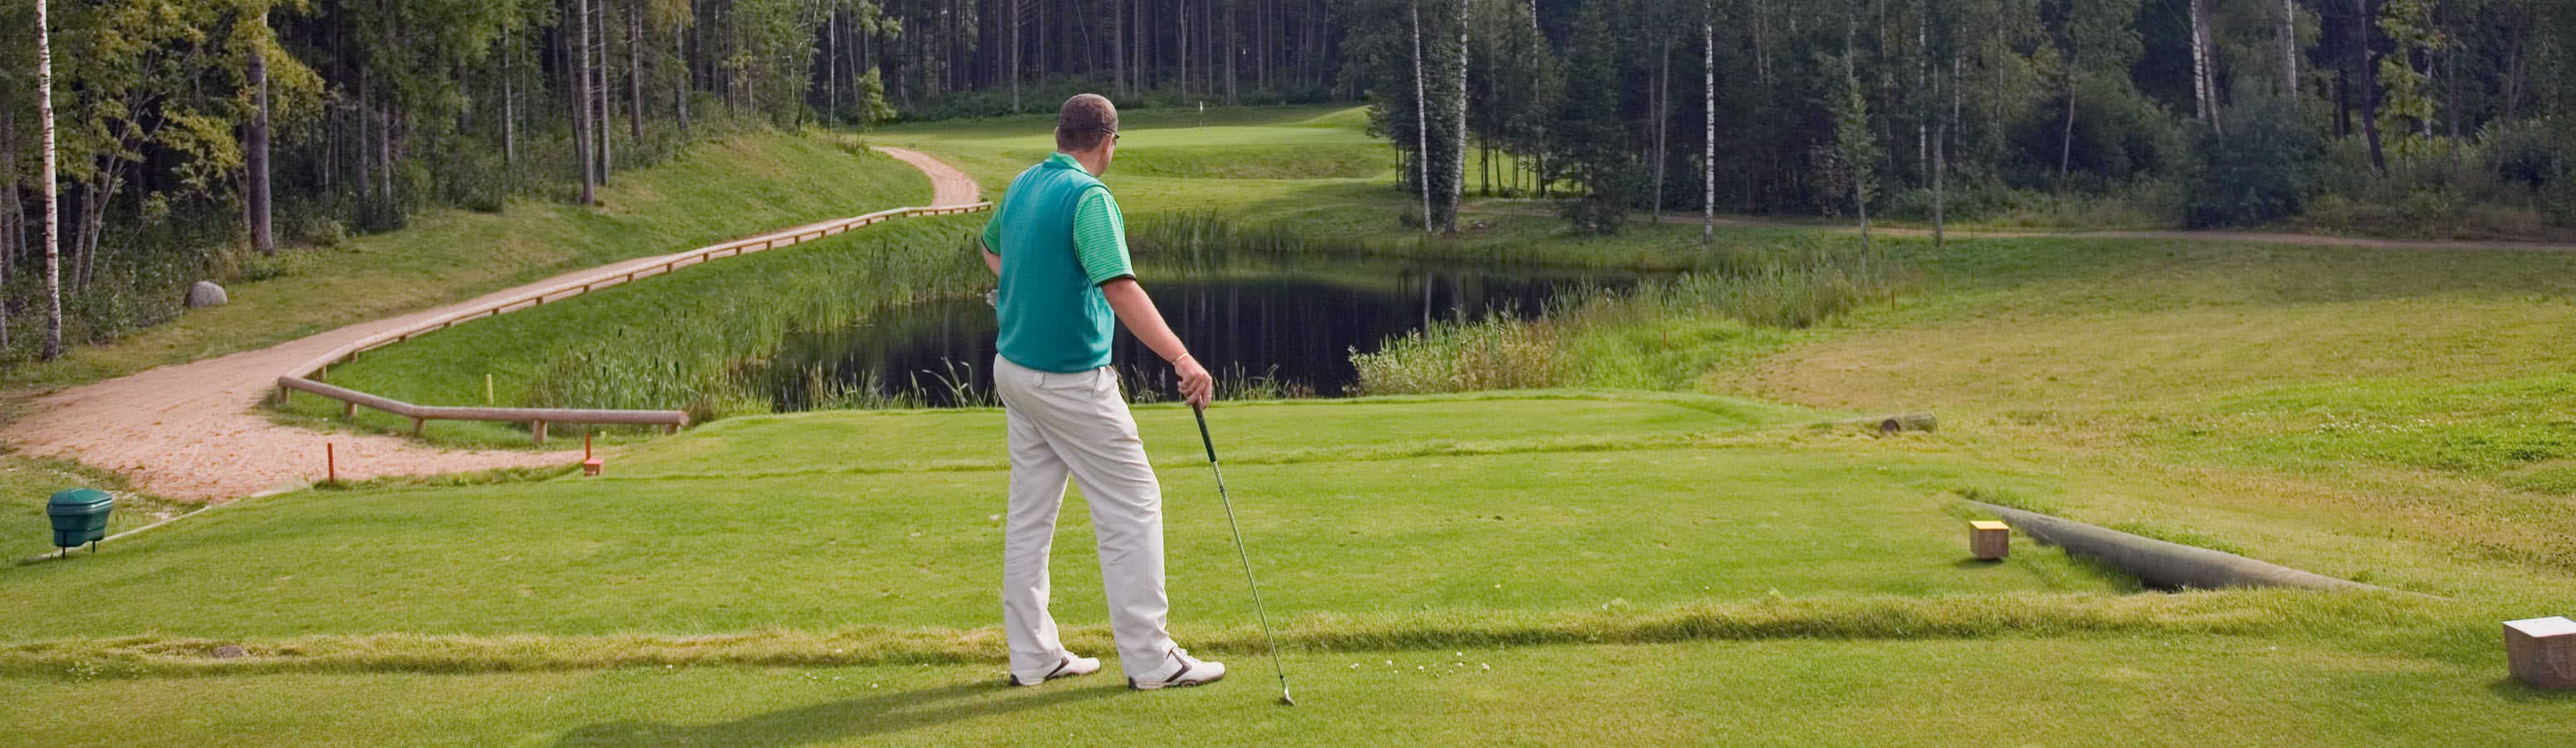 Golf per il campo più bello in Estonia